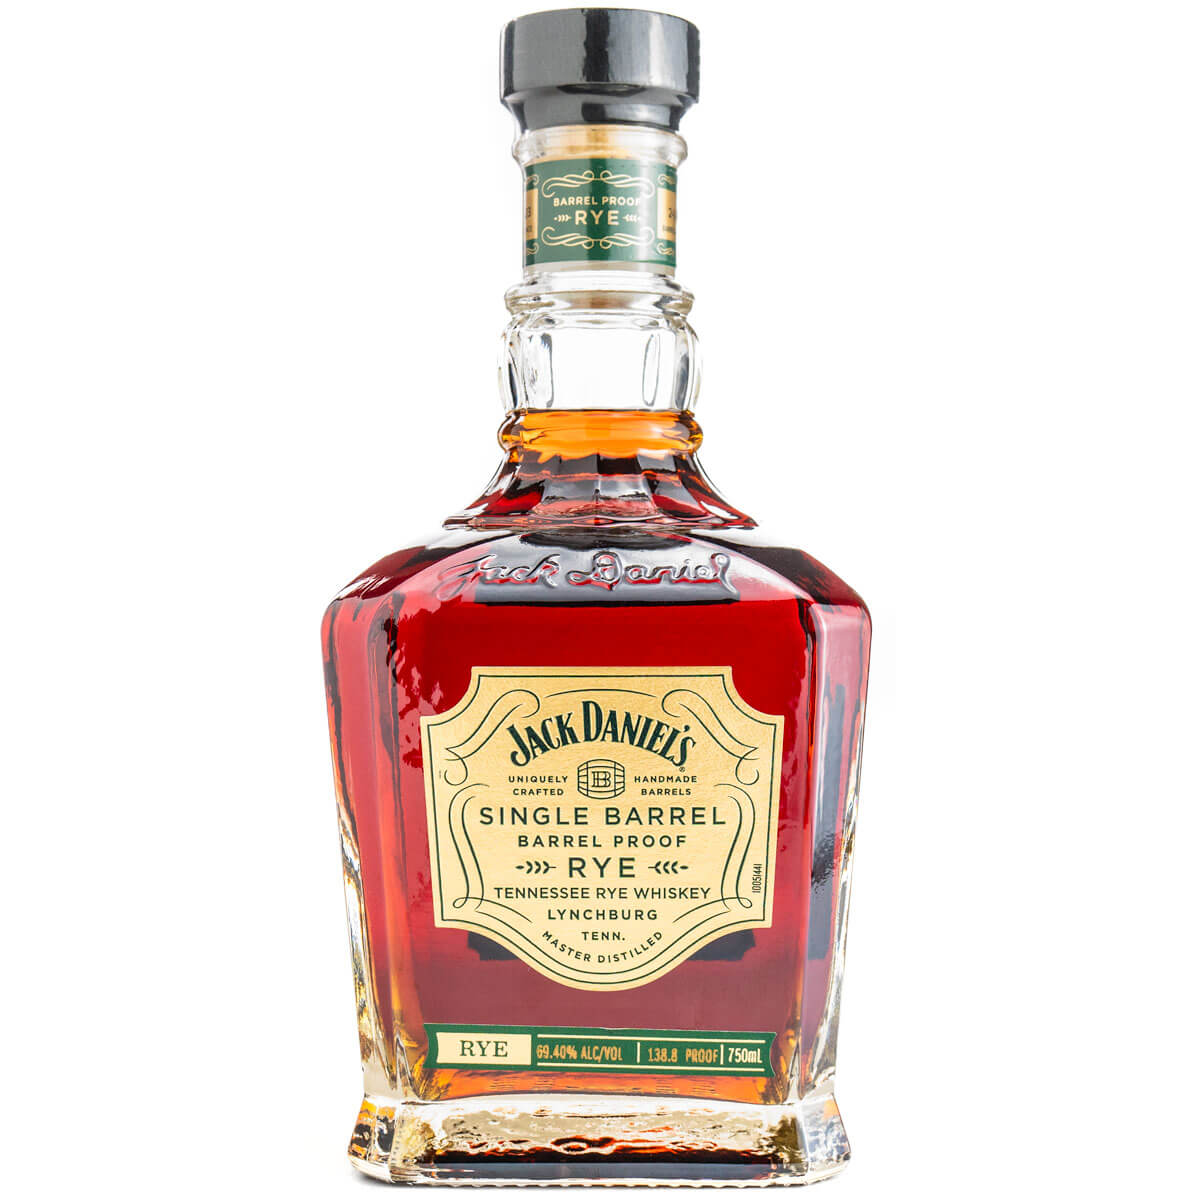 Jack Daniel's Single Barrel Barrel Proof Rye bottle